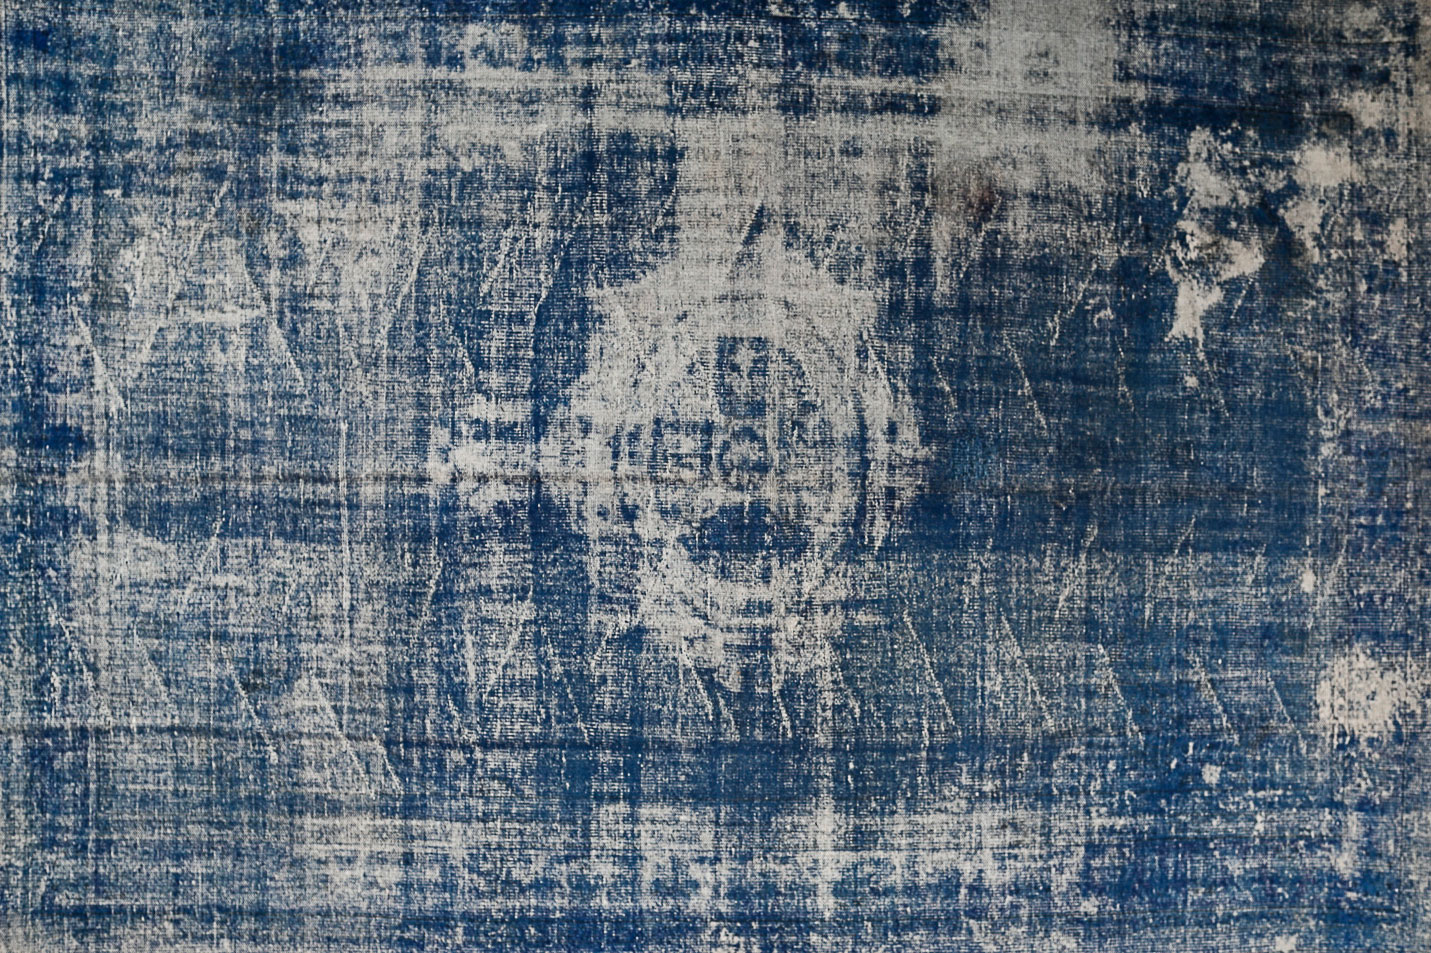 blauer decolorized teppich mit orientalischem muster